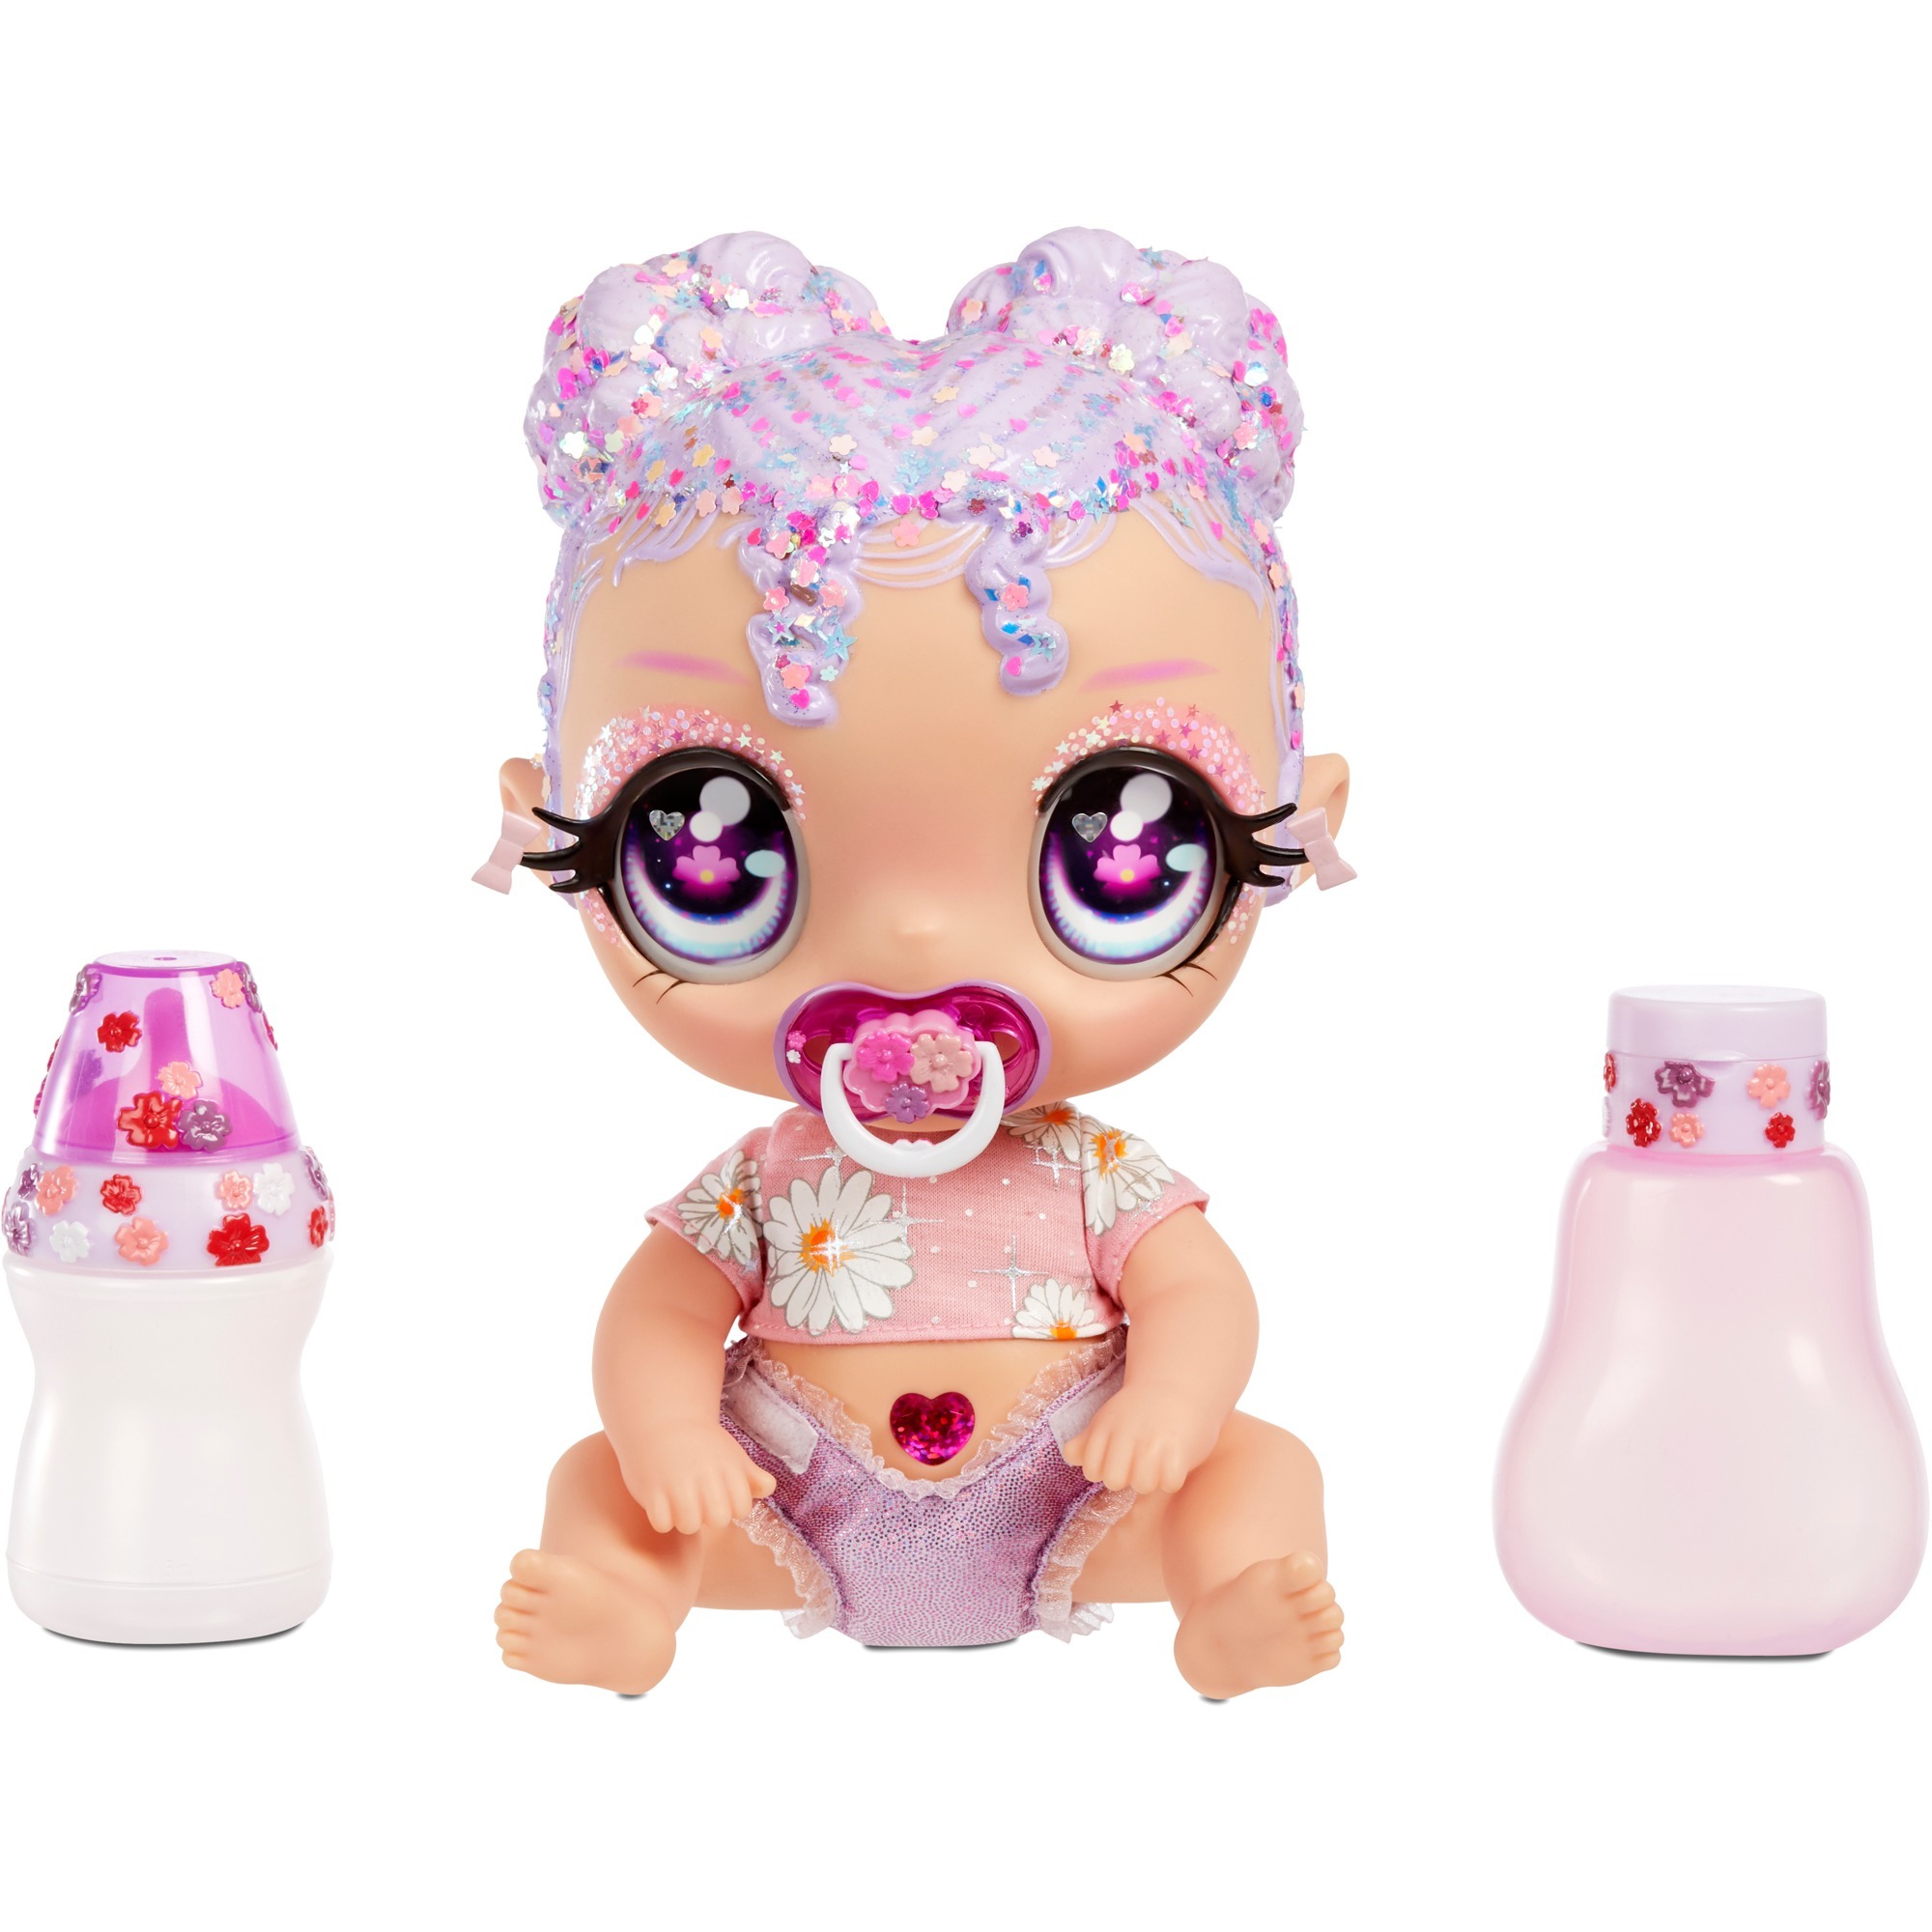 Image of Alternate - Glitter Babyz Doll - Lavender (Flower), Puppe online einkaufen bei Alternate